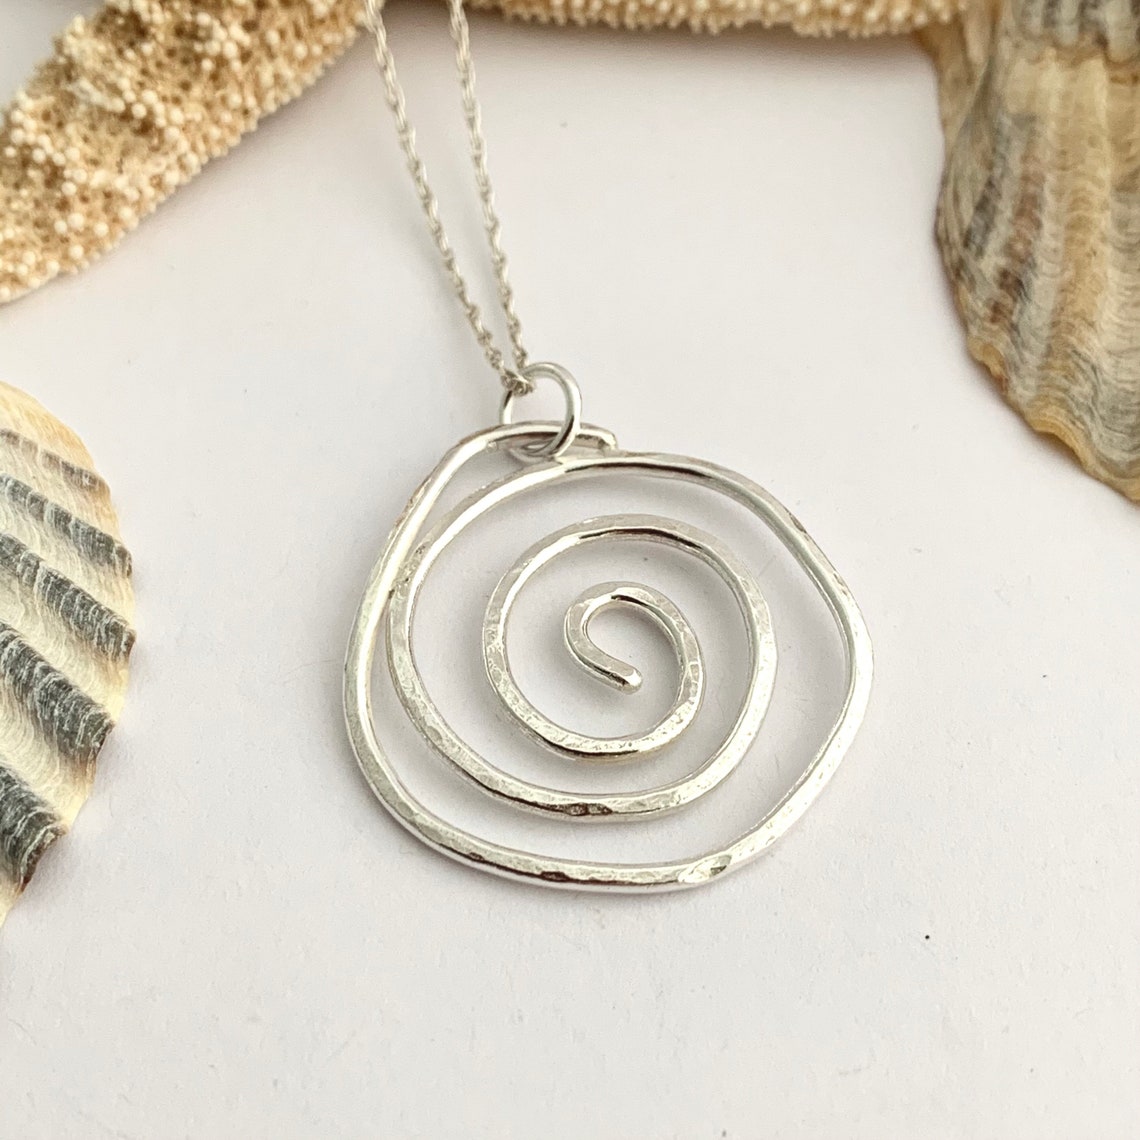 Hammered Sterling Silver Spiral Pendant Celtic Handmade - Etsy UK